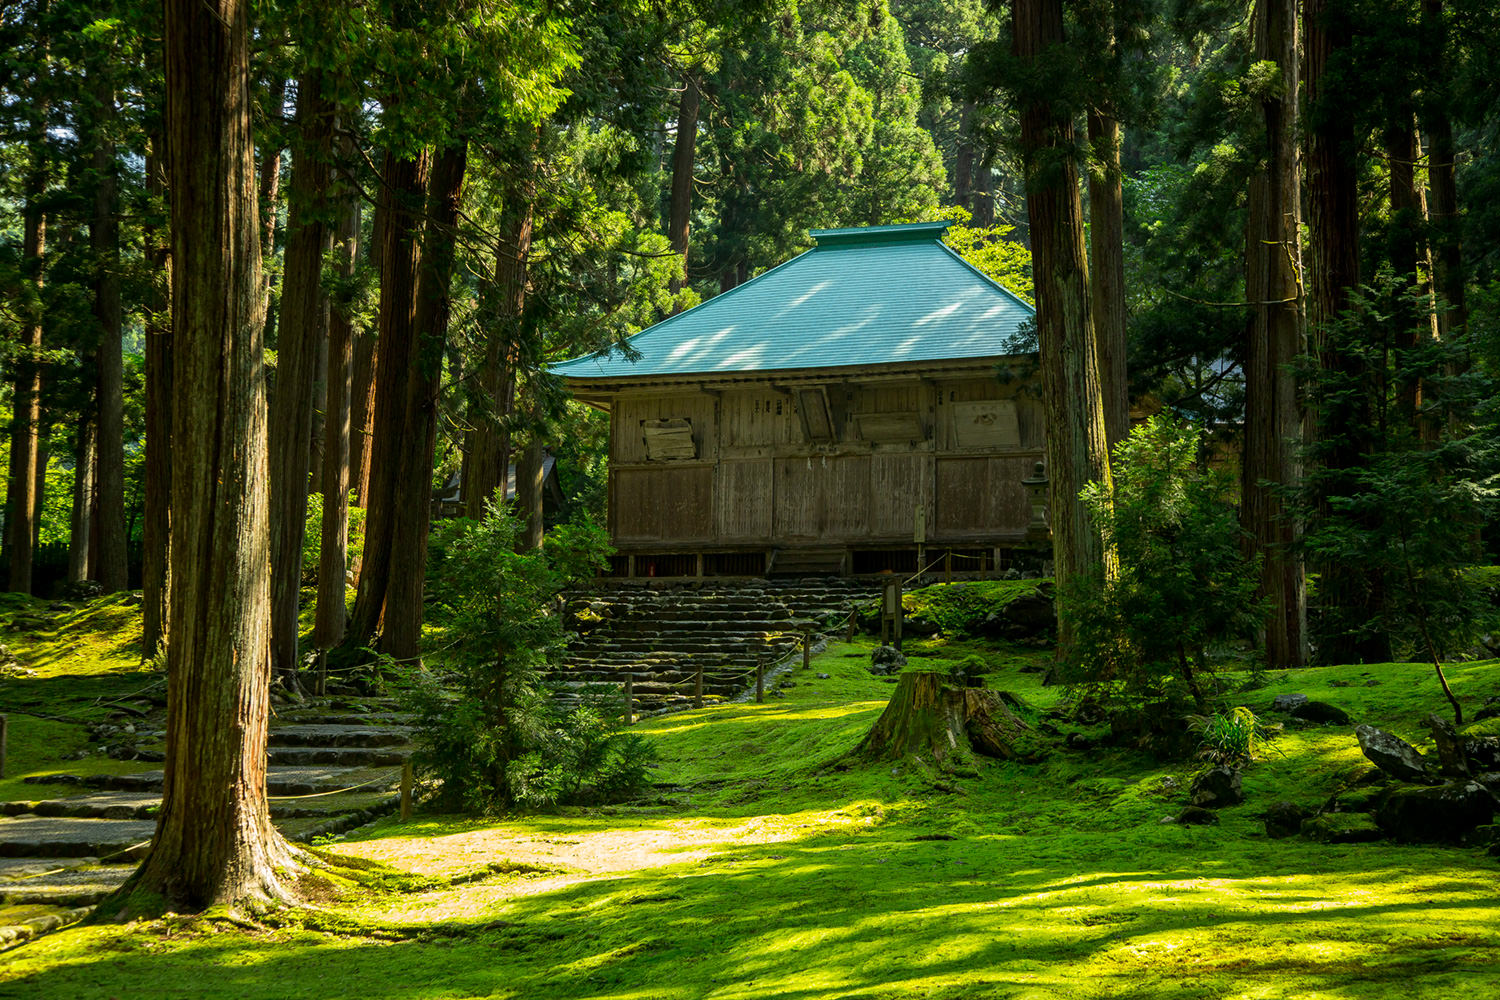 Heisenji Hakusan Shrine